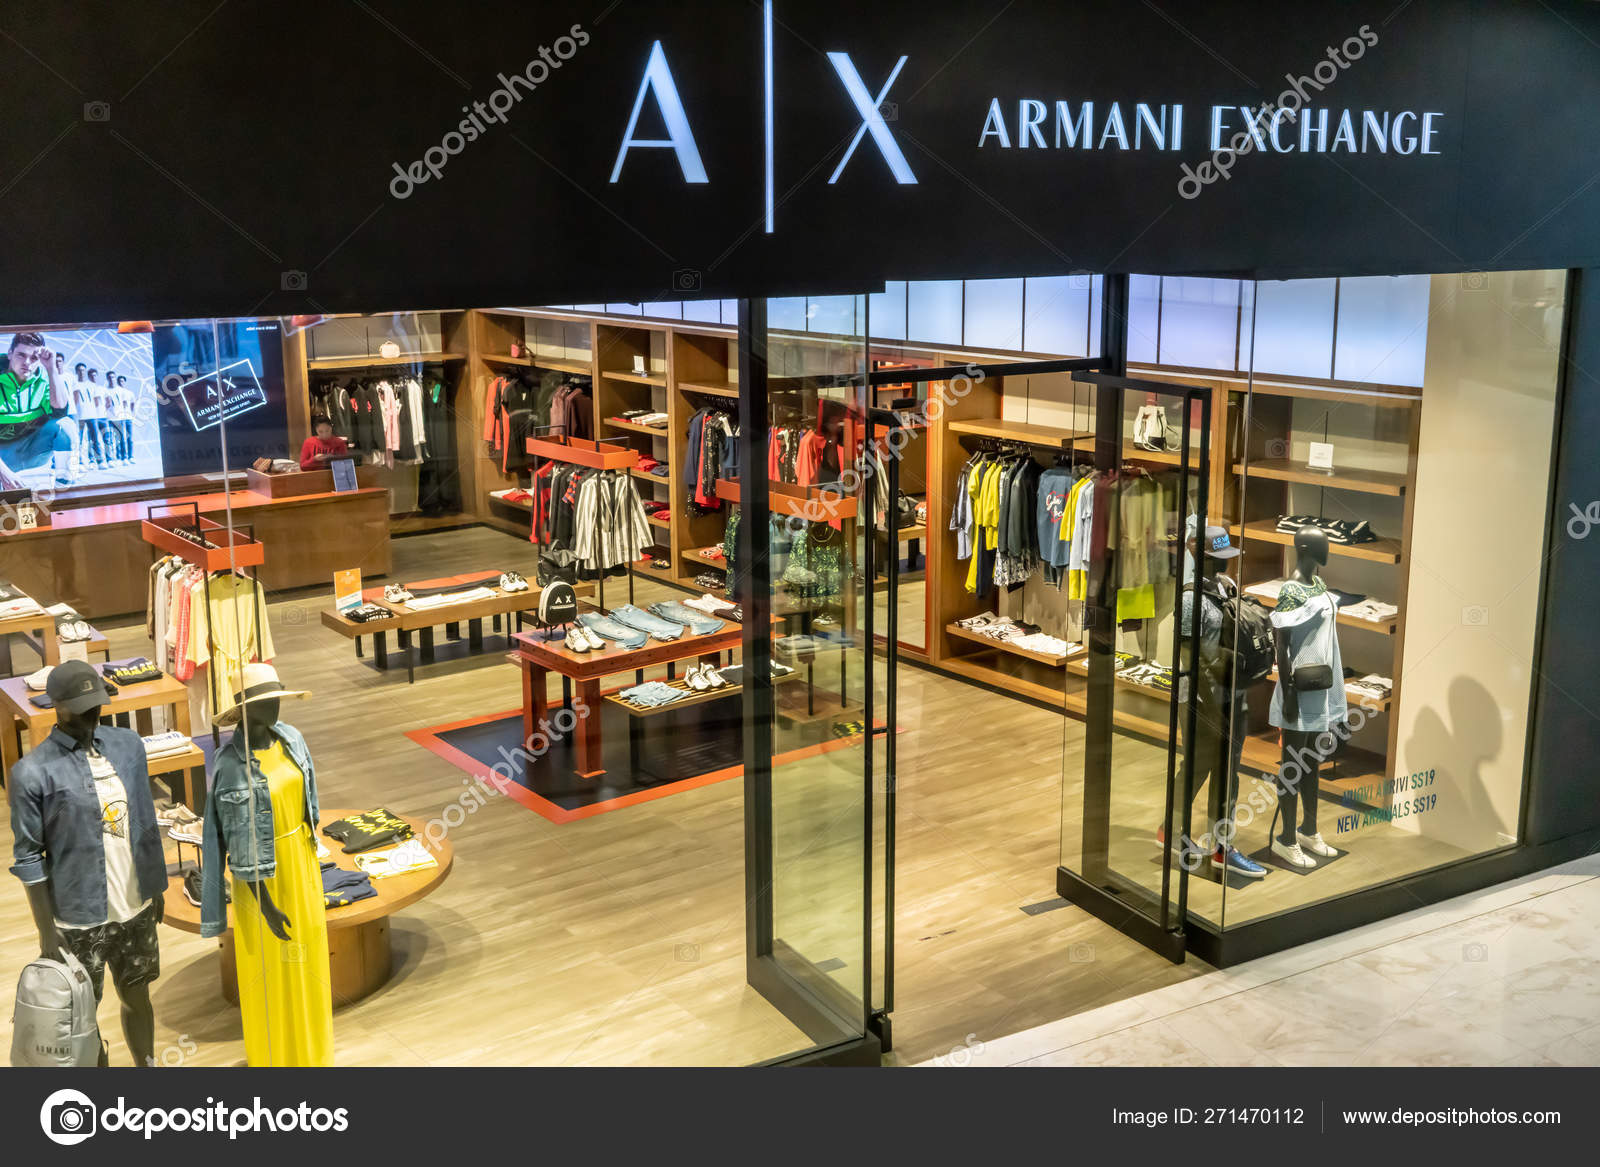 A|X Armani Exchange at Emquartier 